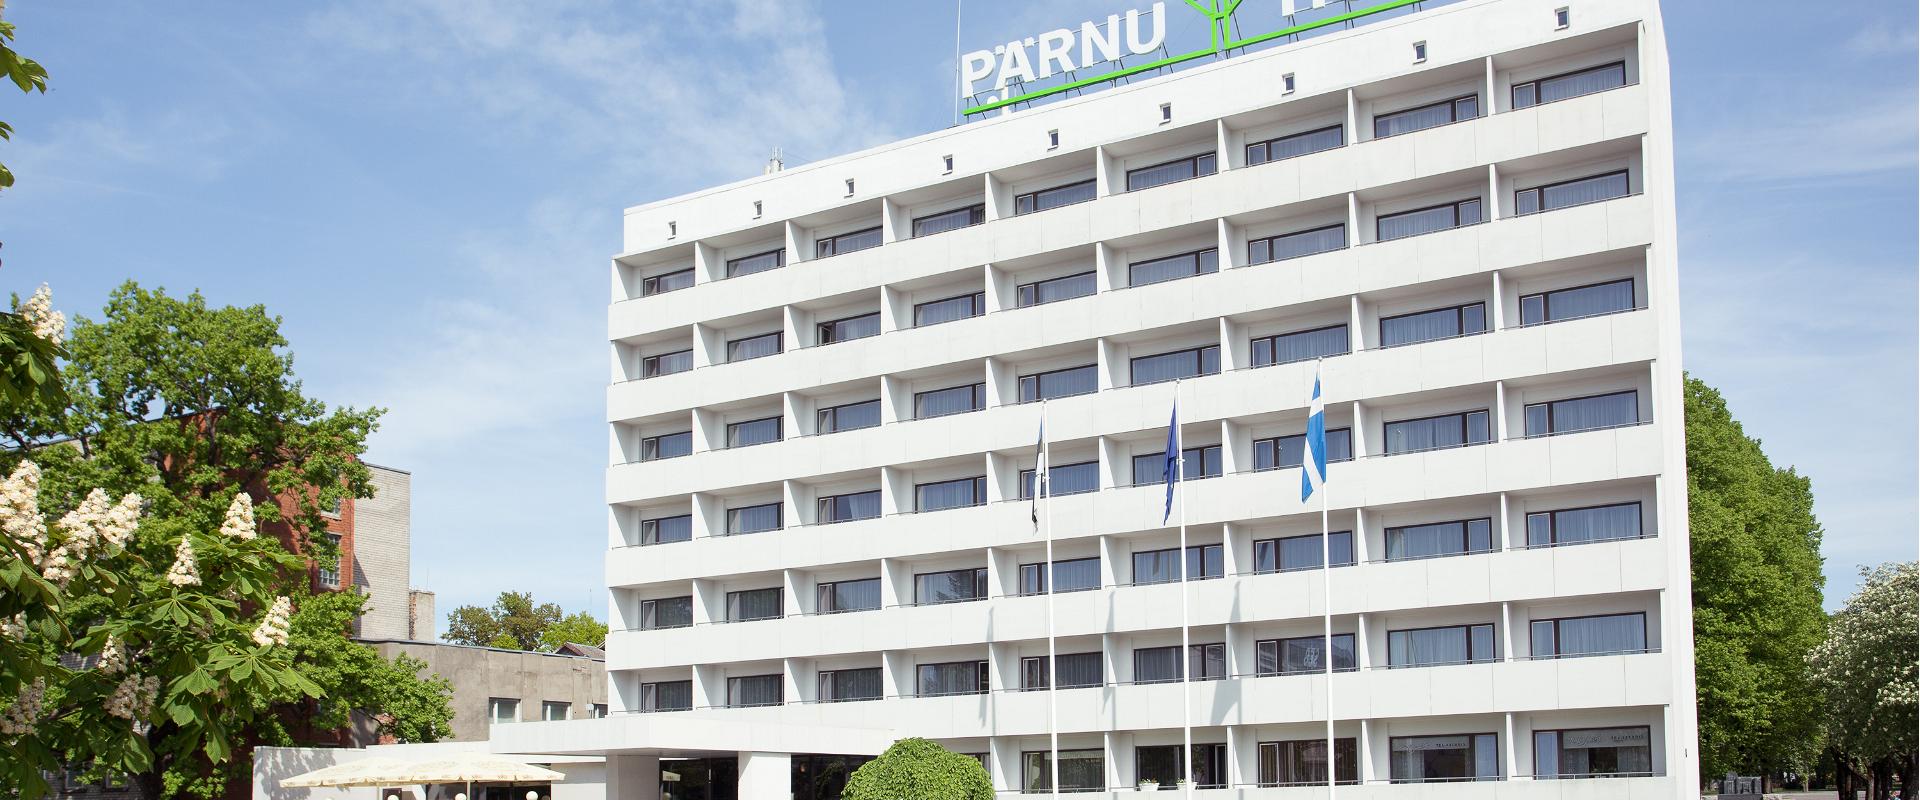 Hotelli Pärnu